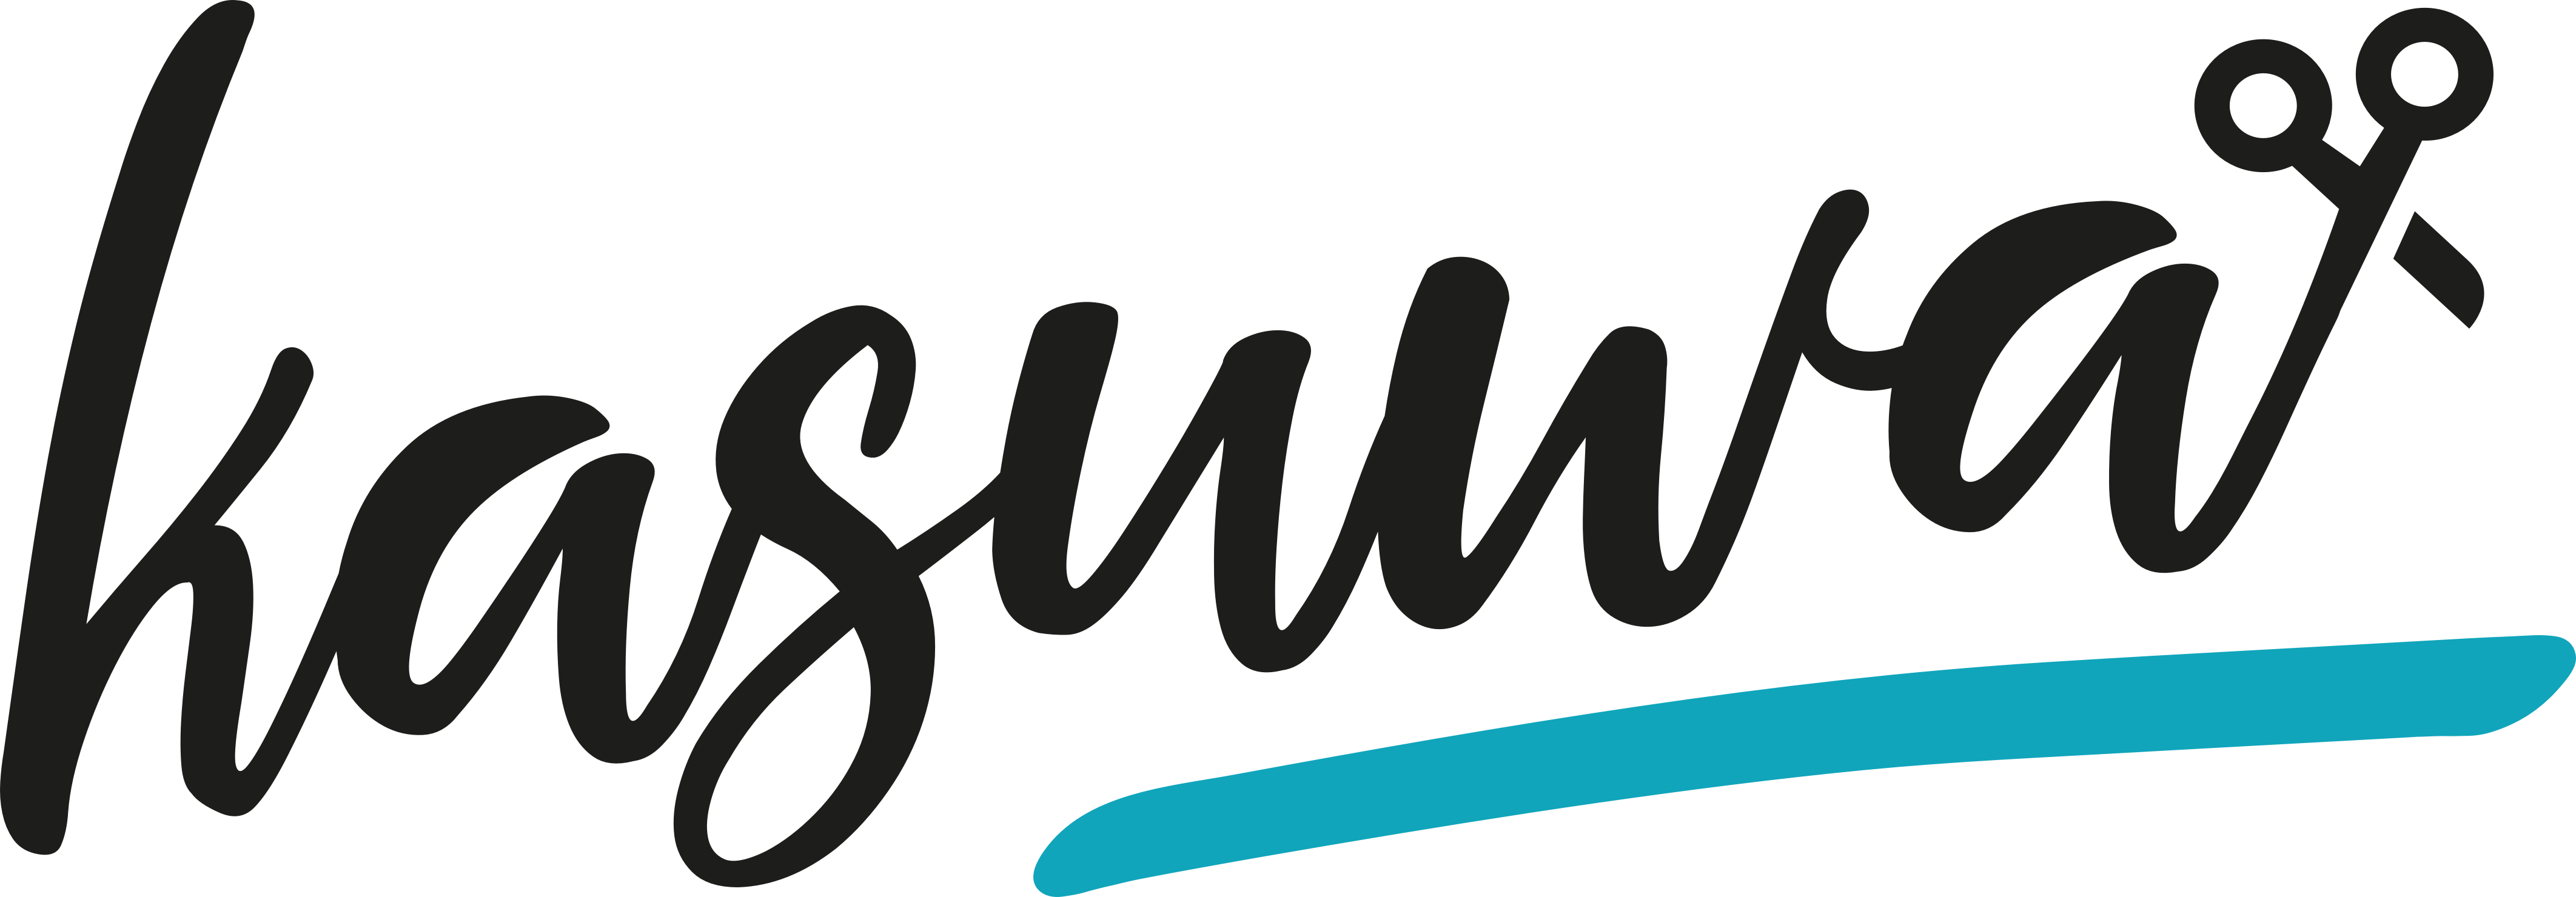 kasuwa-logo